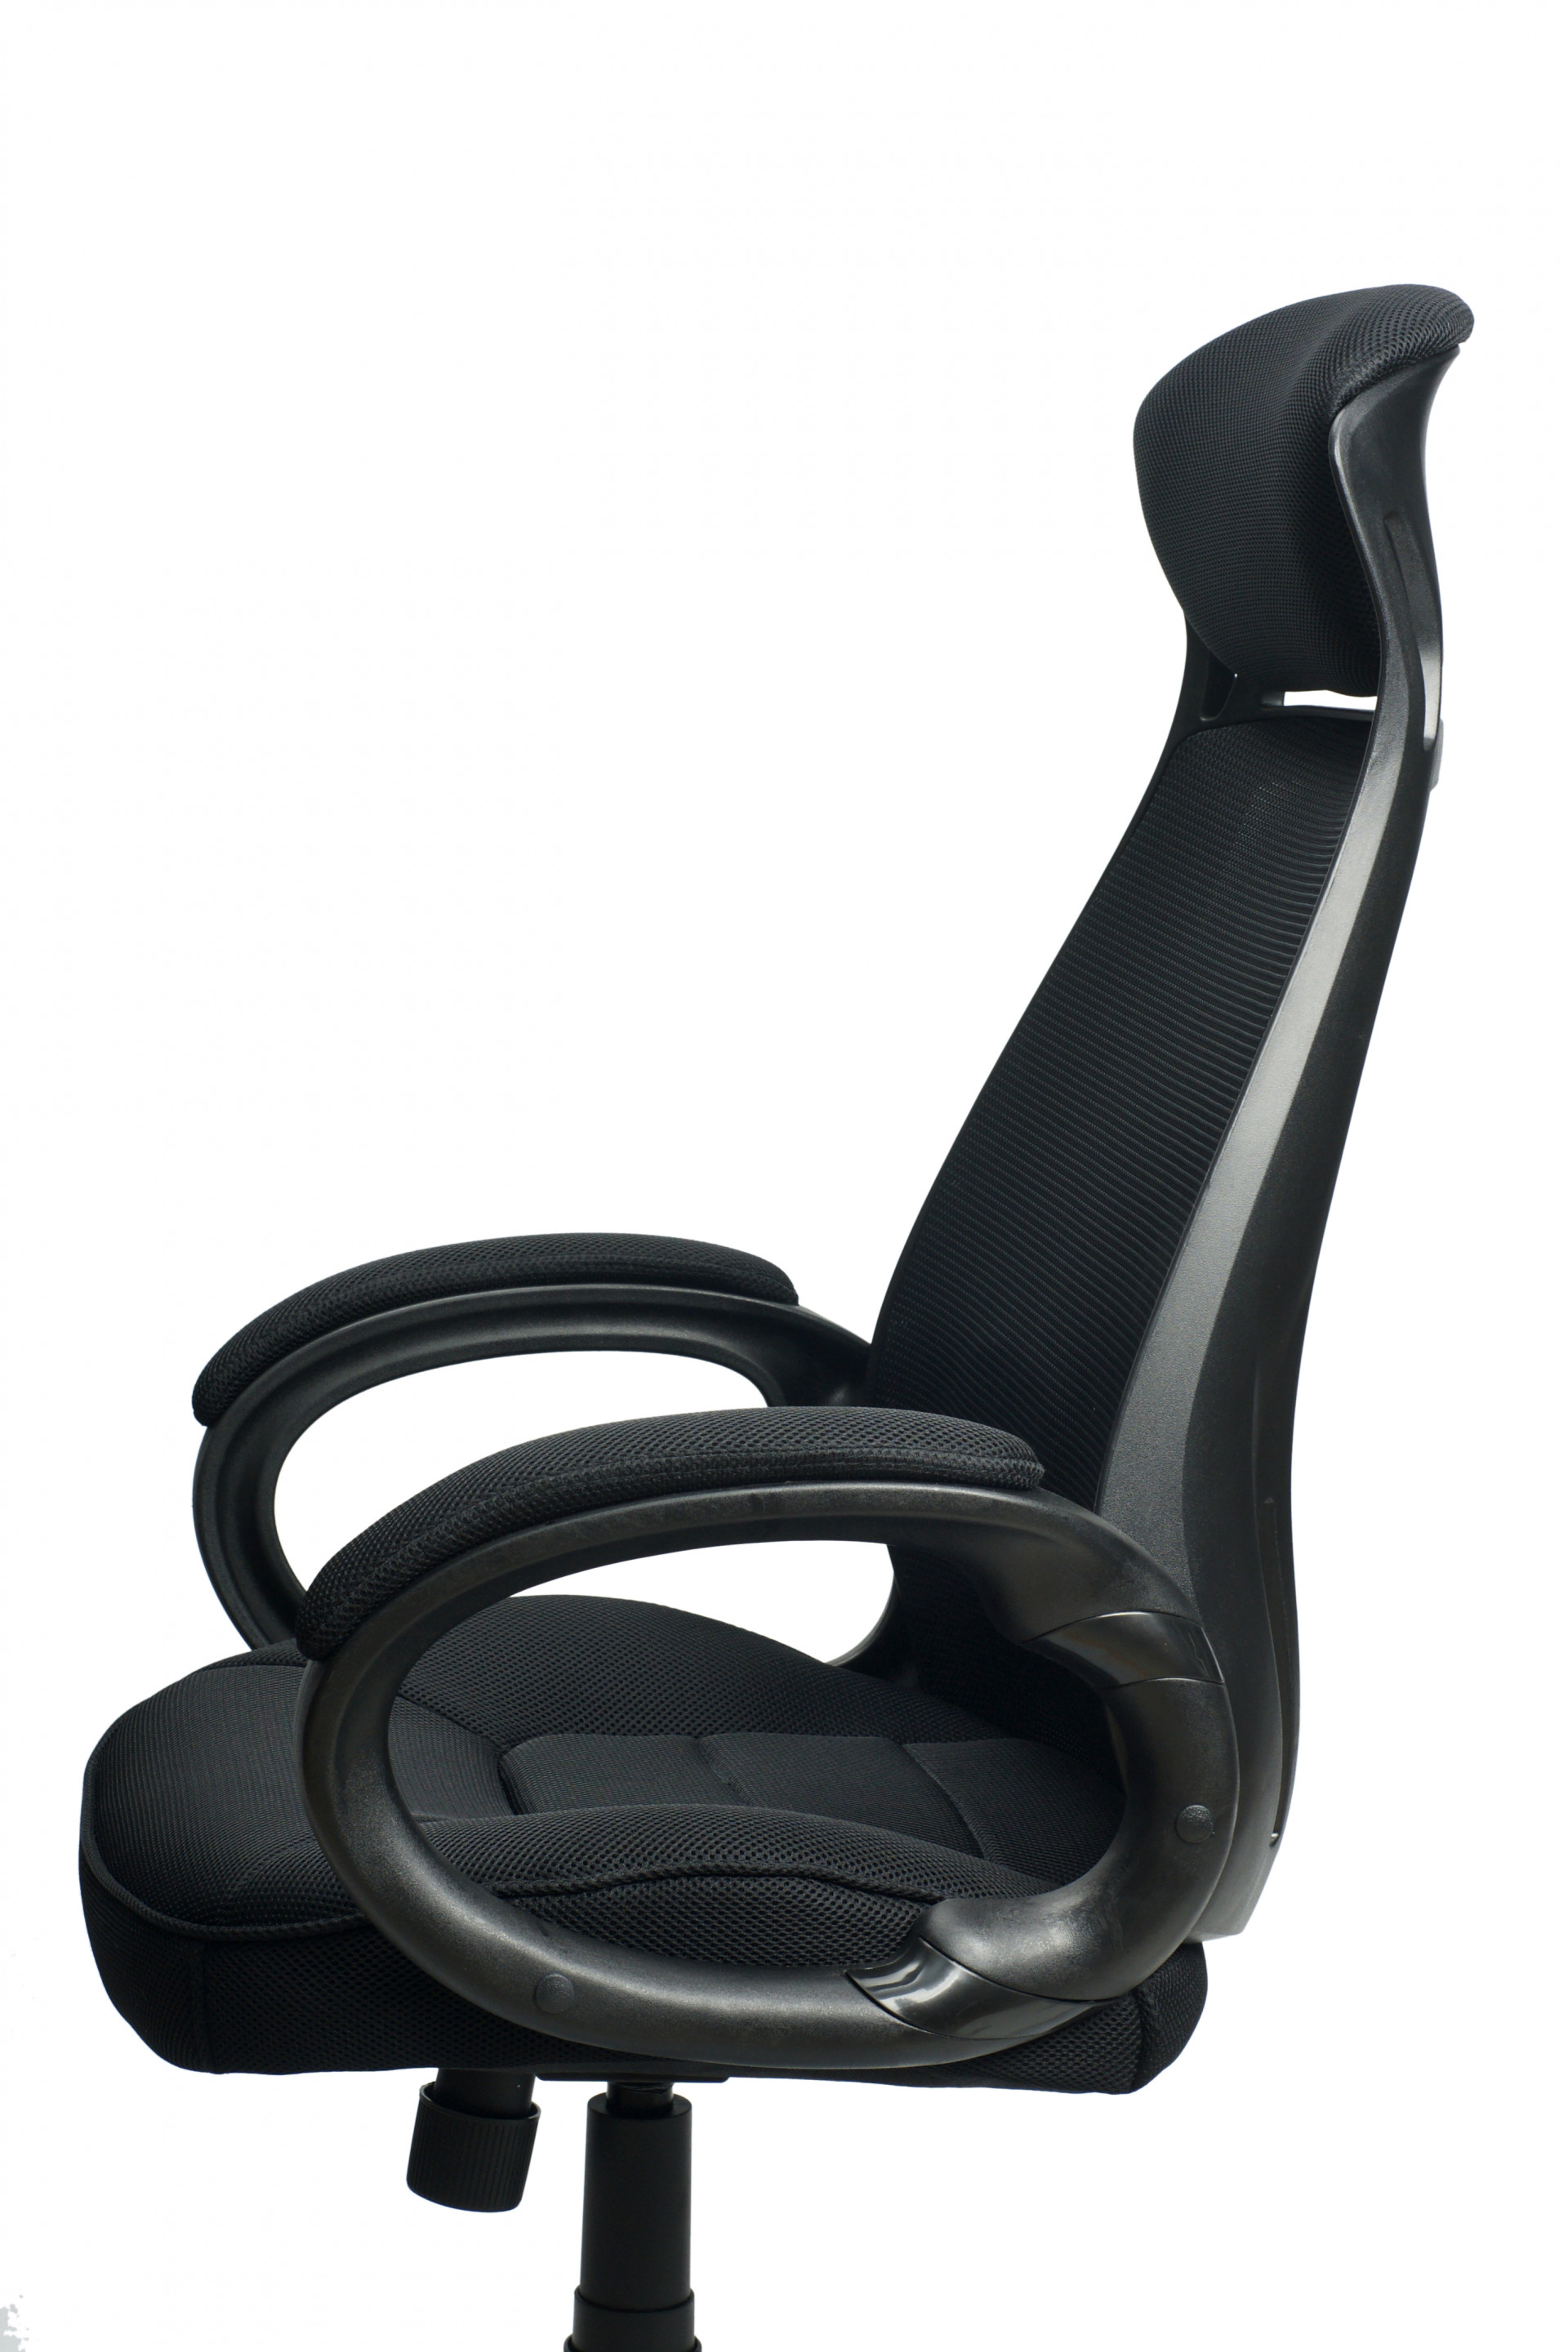 Кресло офисное TPRO- Briz black E0444